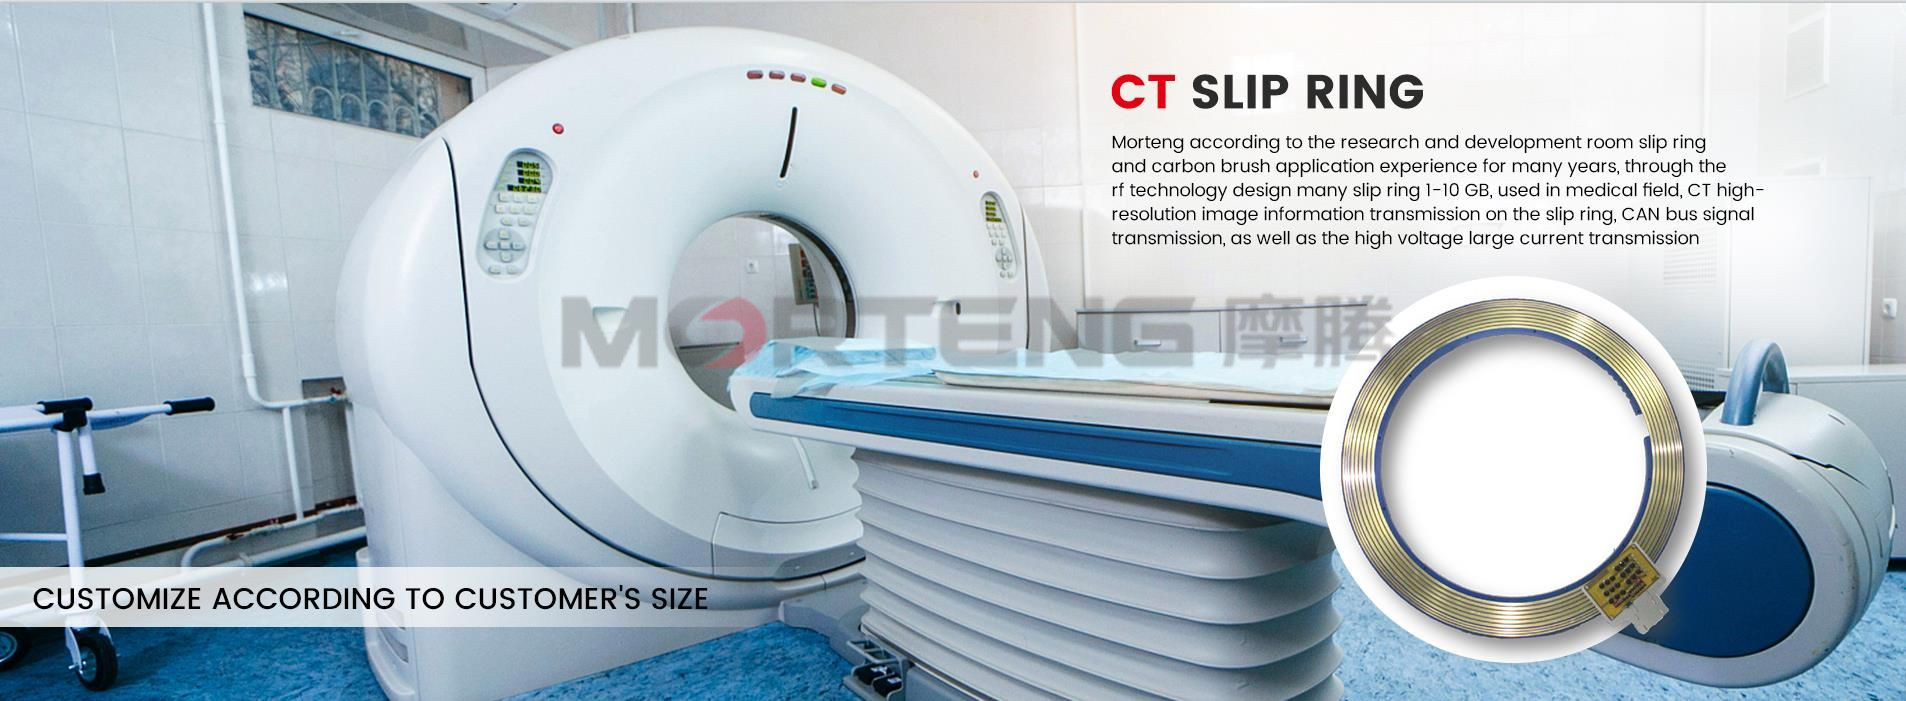 Medical CT Scanning Slip Ring (2)